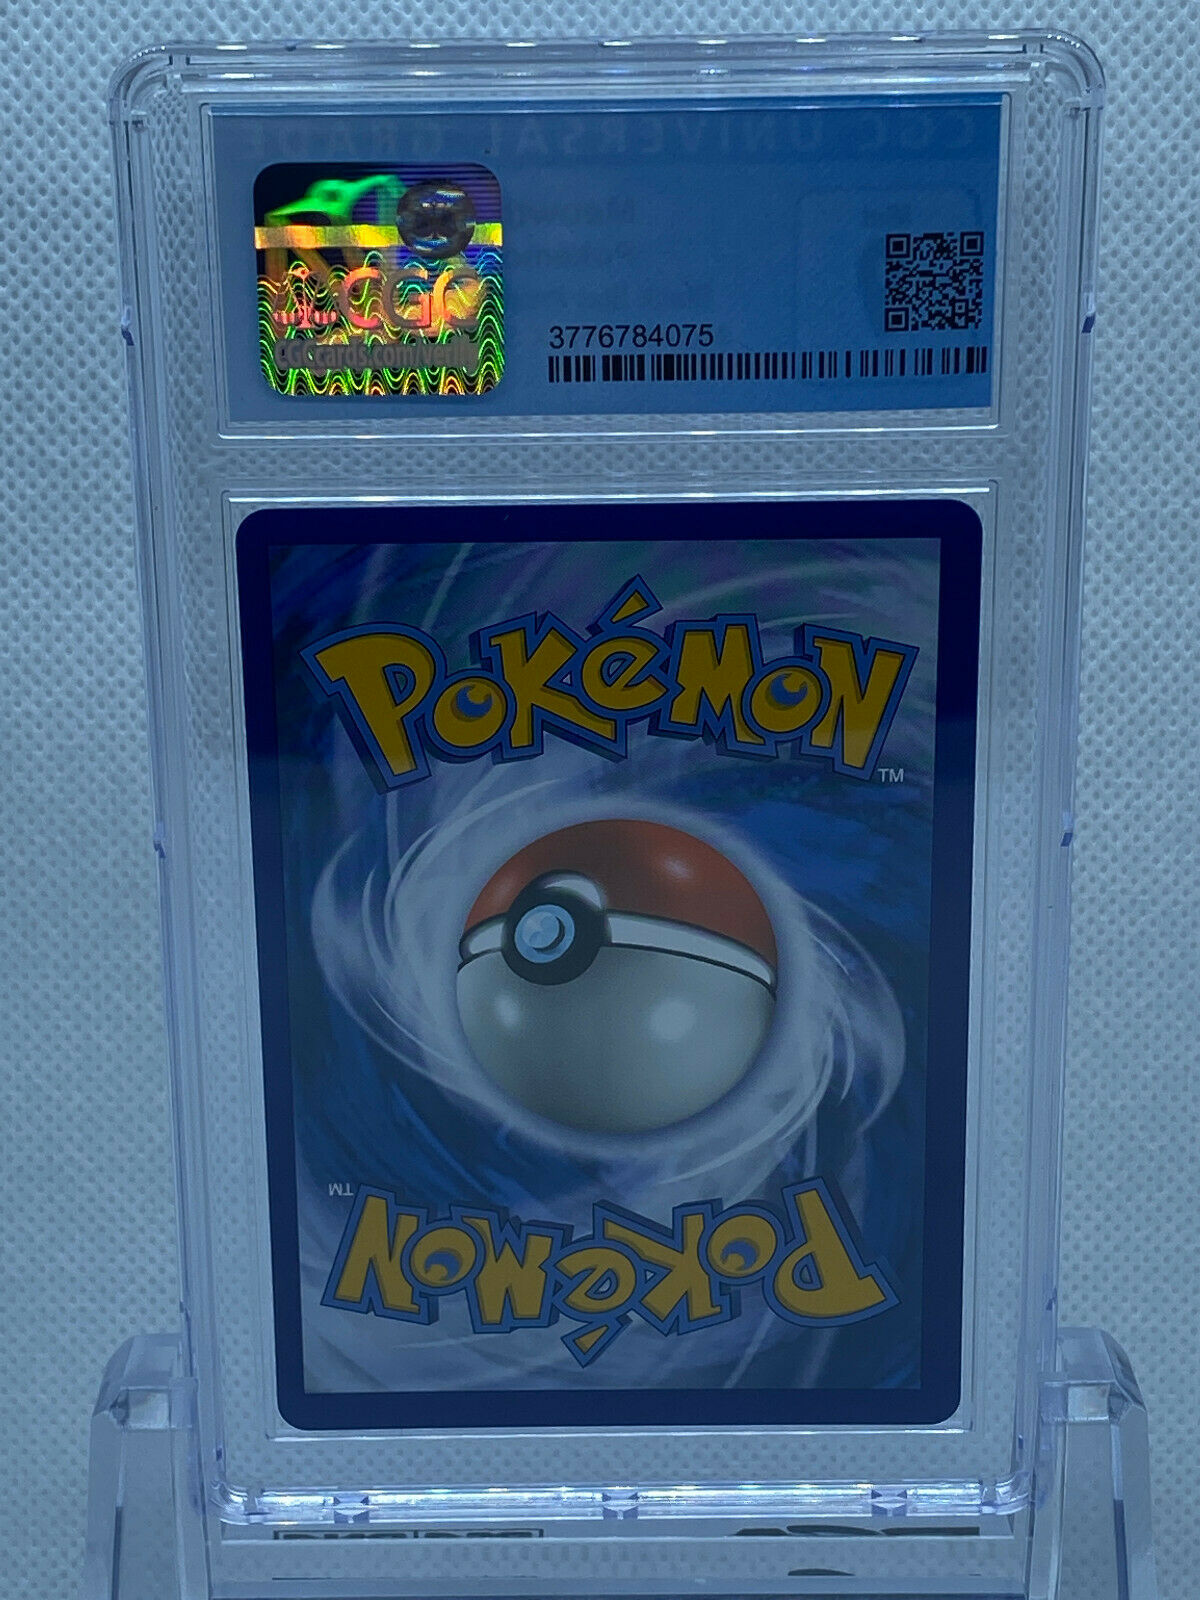 Boîte de collection spéciale Pokémon Meowth VMAX - Cartes Pokémon